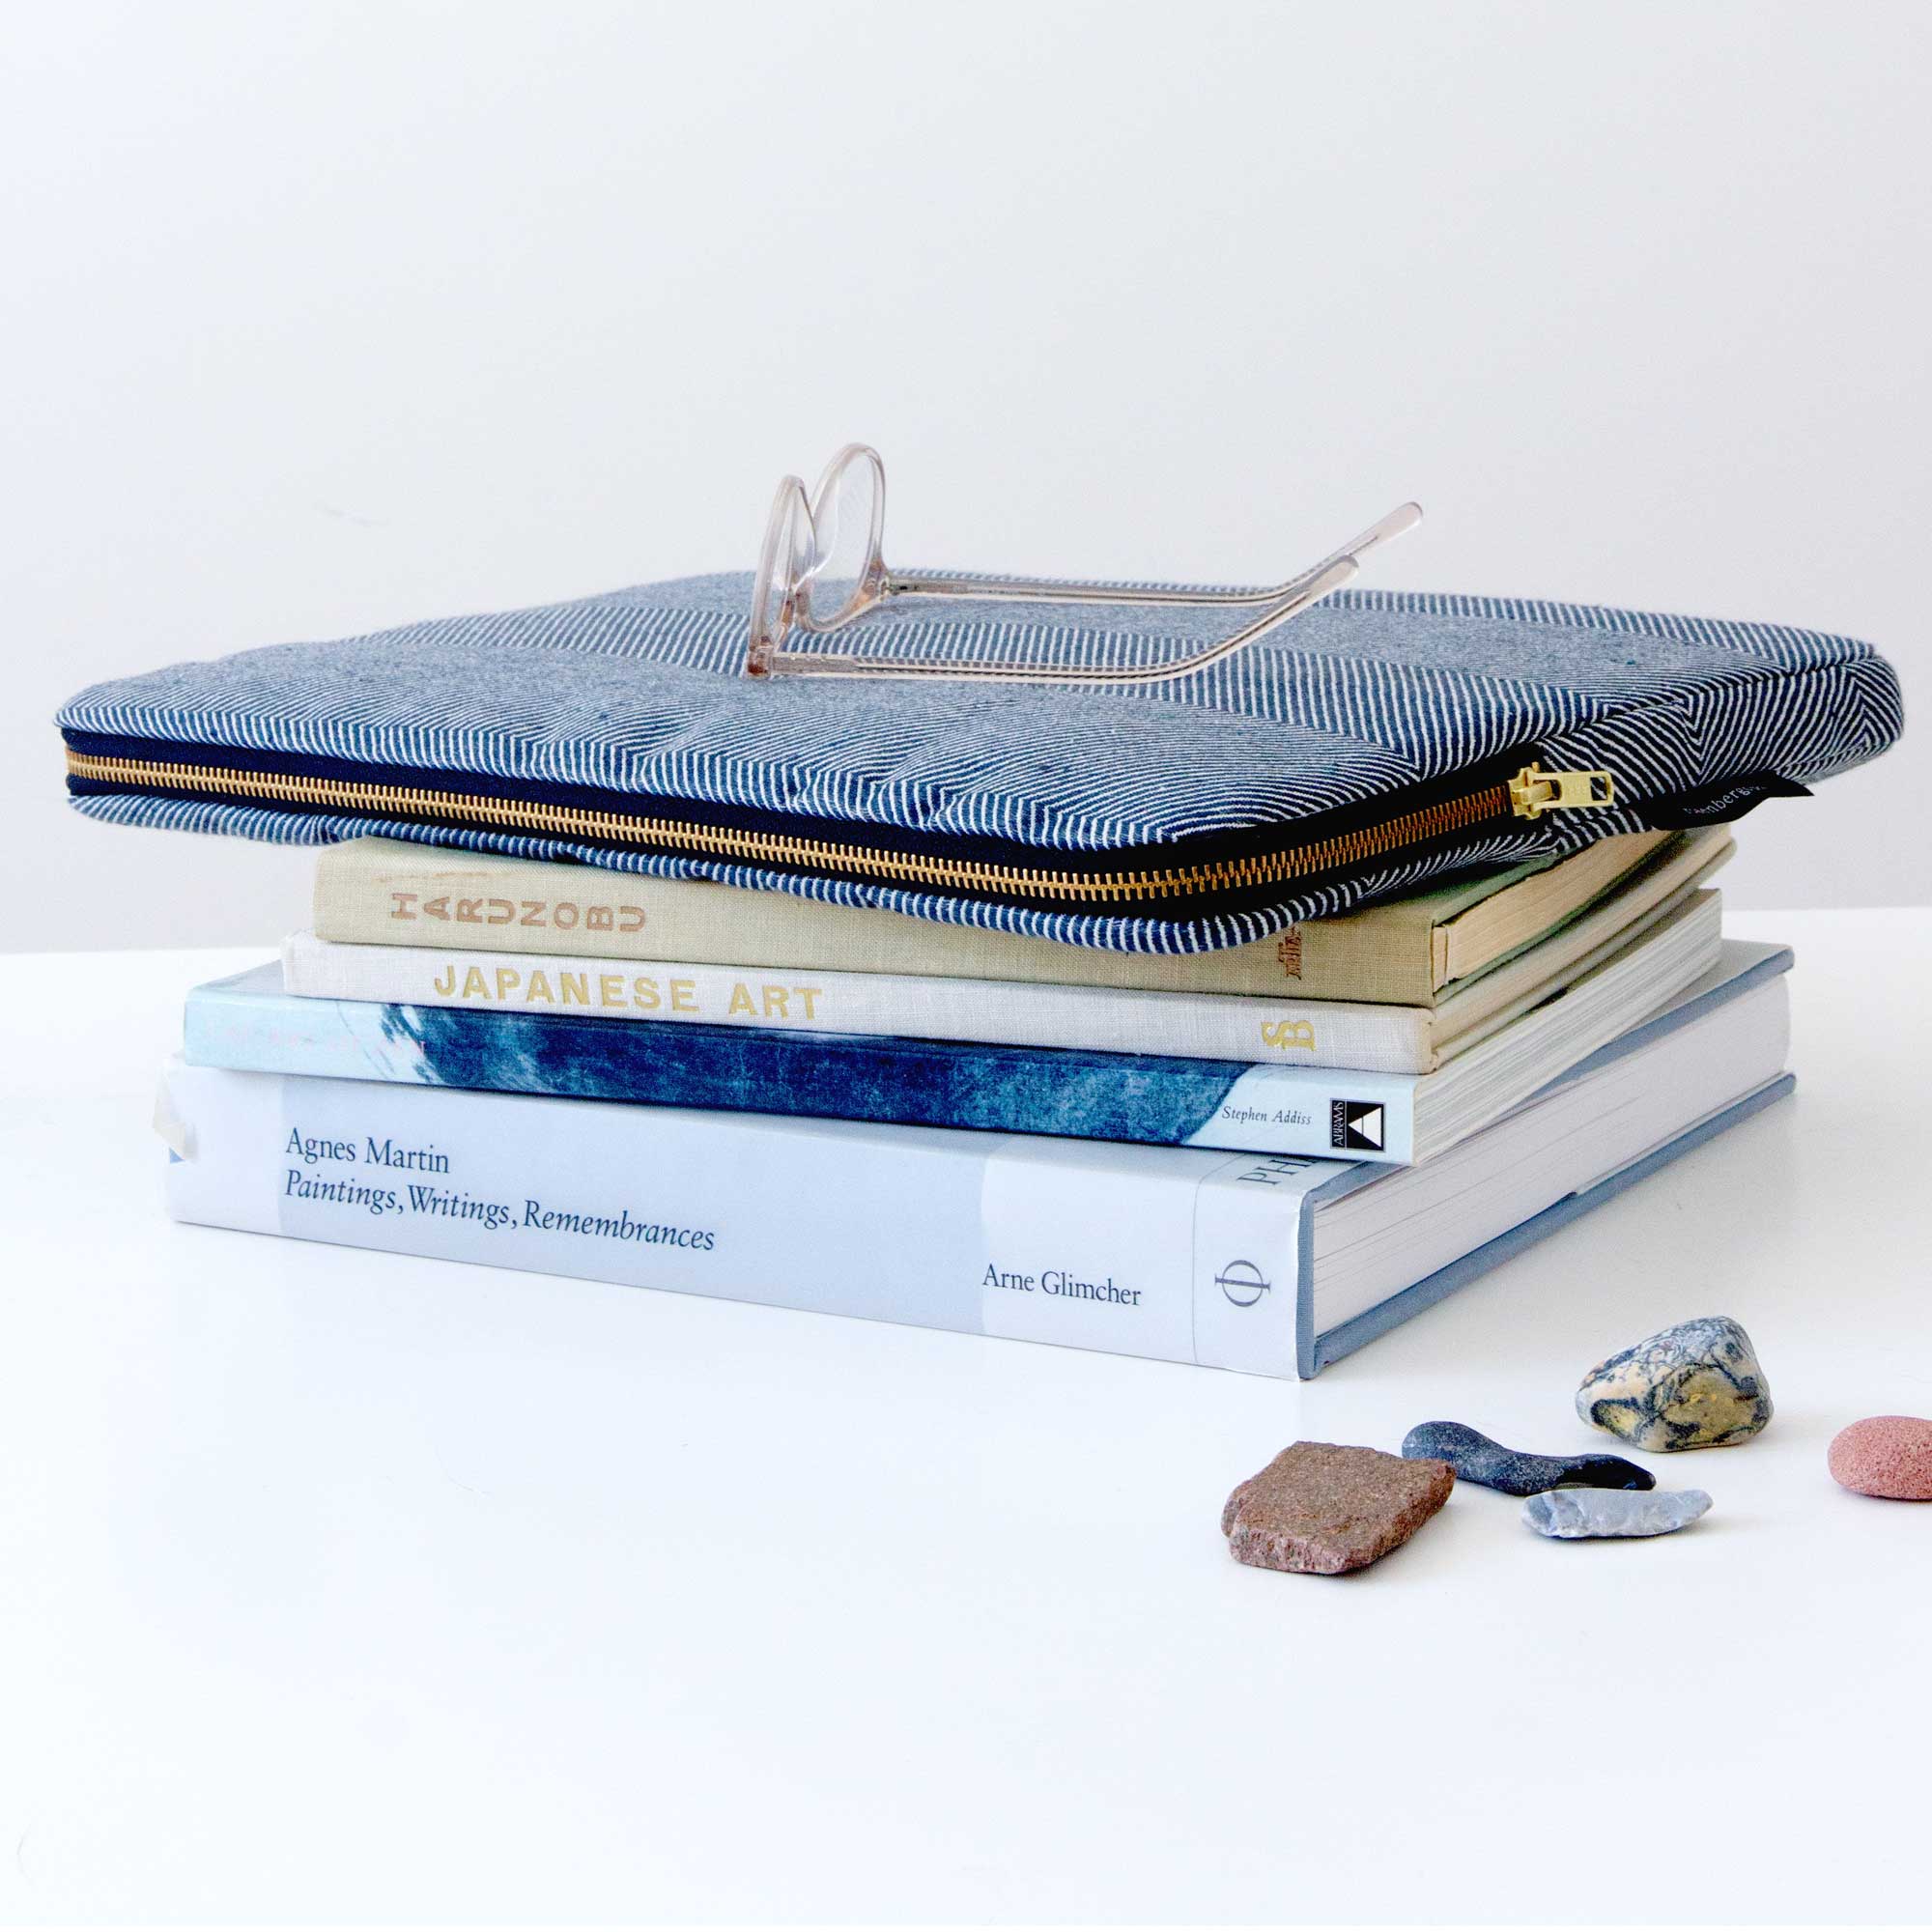 Escape laptop sleeve in indigo blue herringbone weave, design by Anne Rosenberg, RosenbergCph